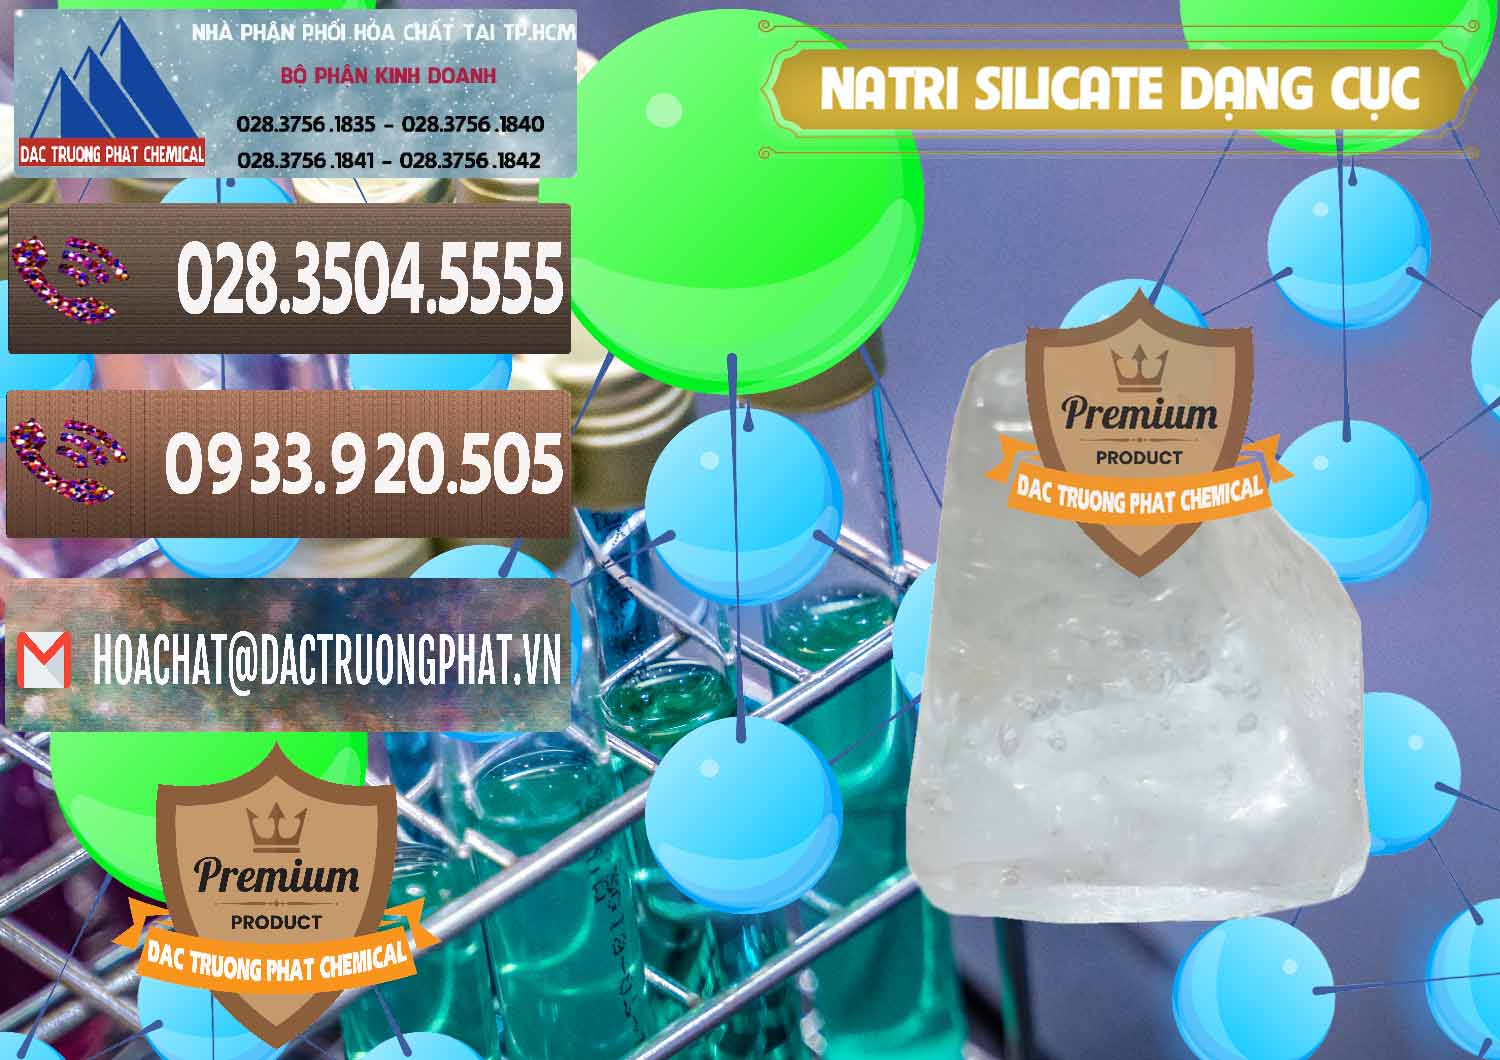 Cty chuyên bán & cung cấp Natri Silicate - Na2SiO3 - Keo Silicate Dạng Cục Ấn Độ India - 0382 - Đơn vị cung cấp ( nhập khẩu ) hóa chất tại TP.HCM - hoachatviet.net